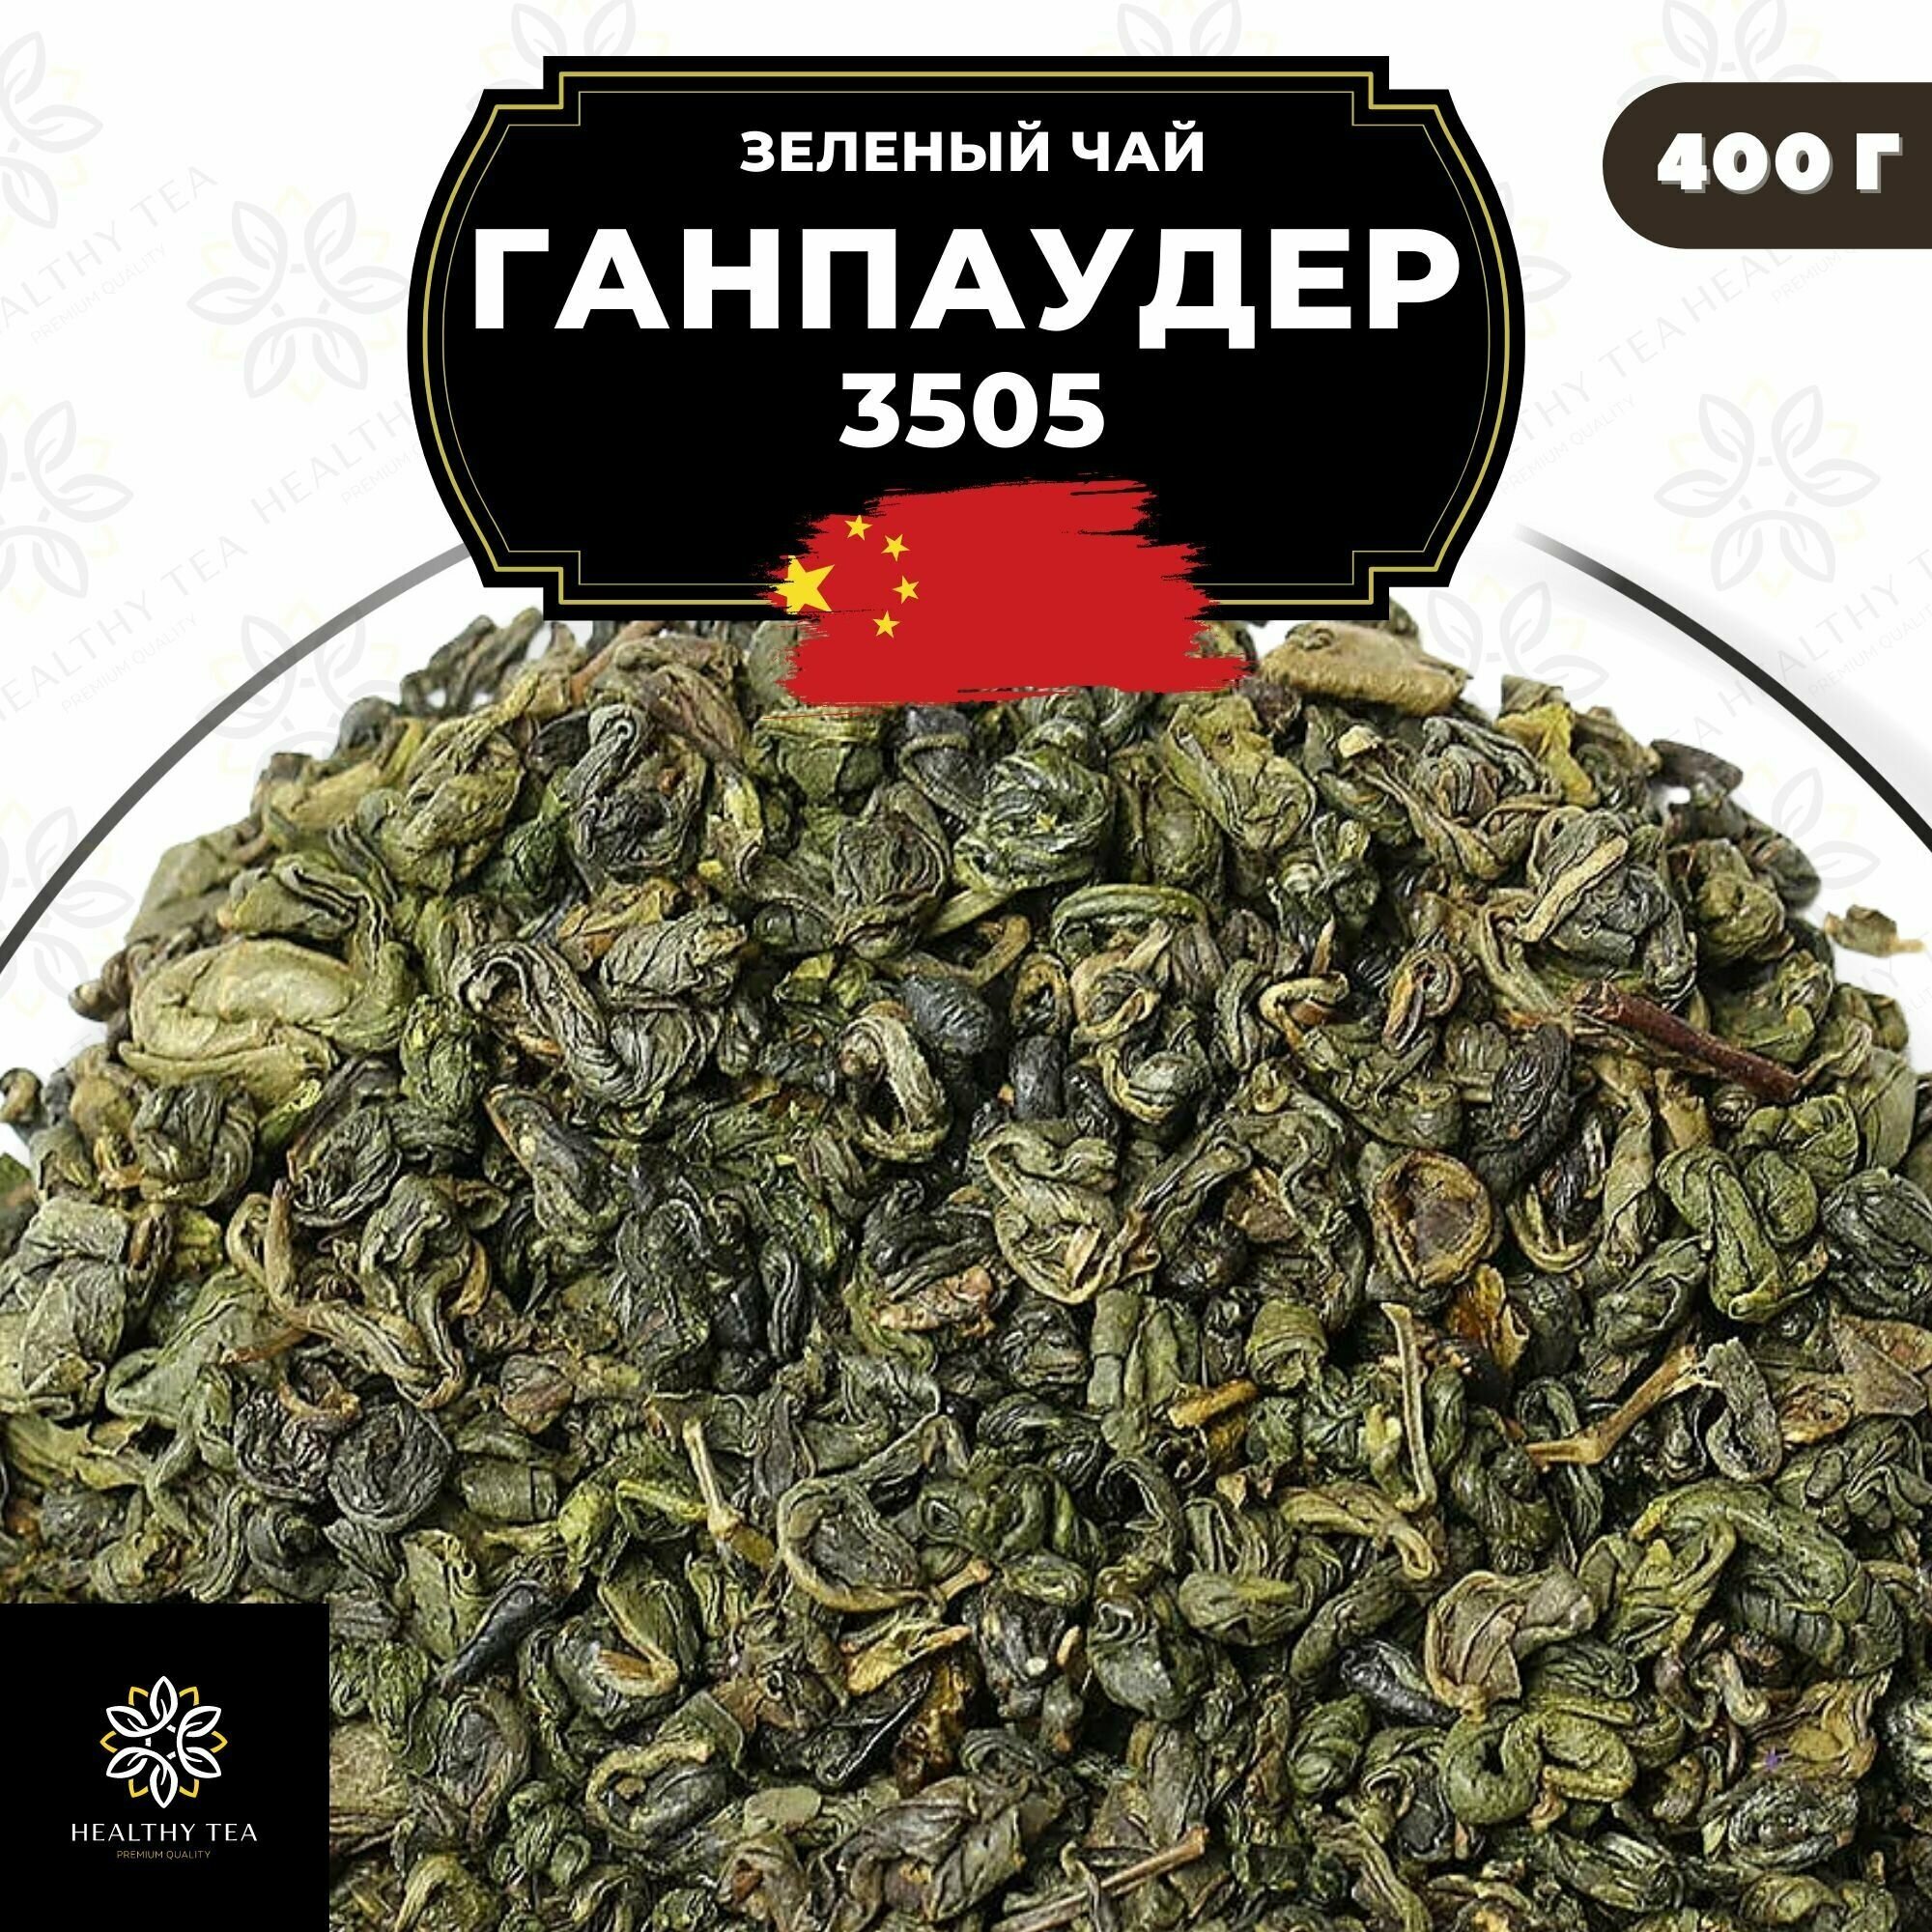 Китайский зеленый чай без добавок Ганпаудер 3505 Полезный чай / HEALTHY TEA, 400 г - фотография № 1